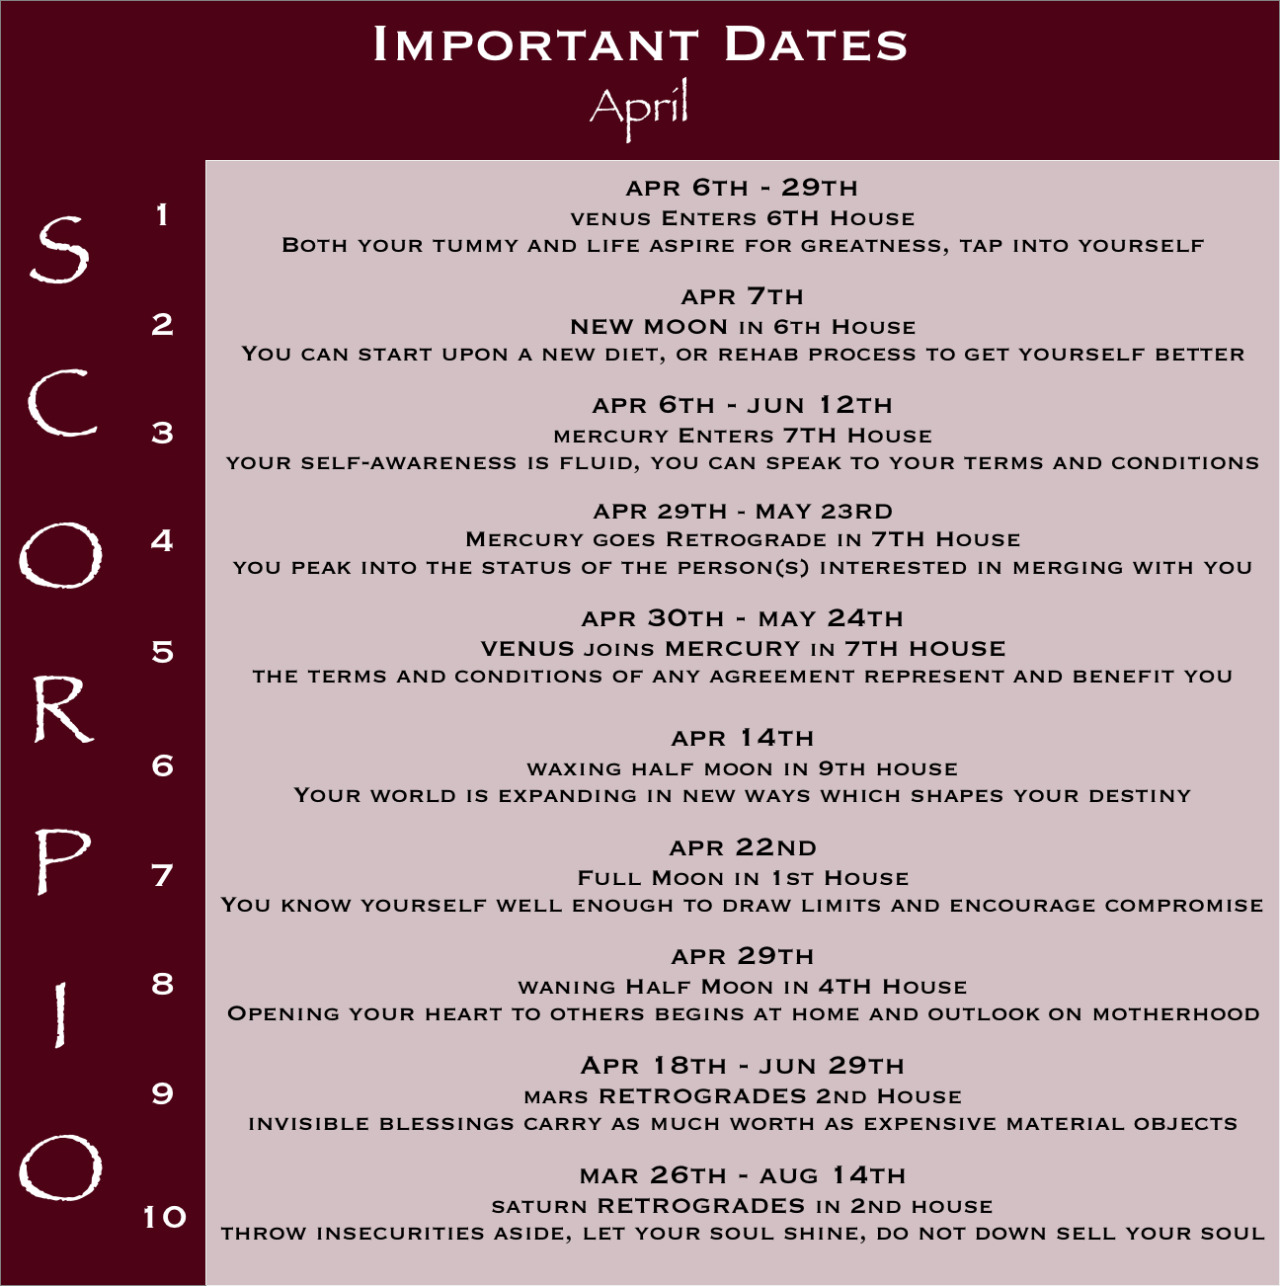 Scorpio dates